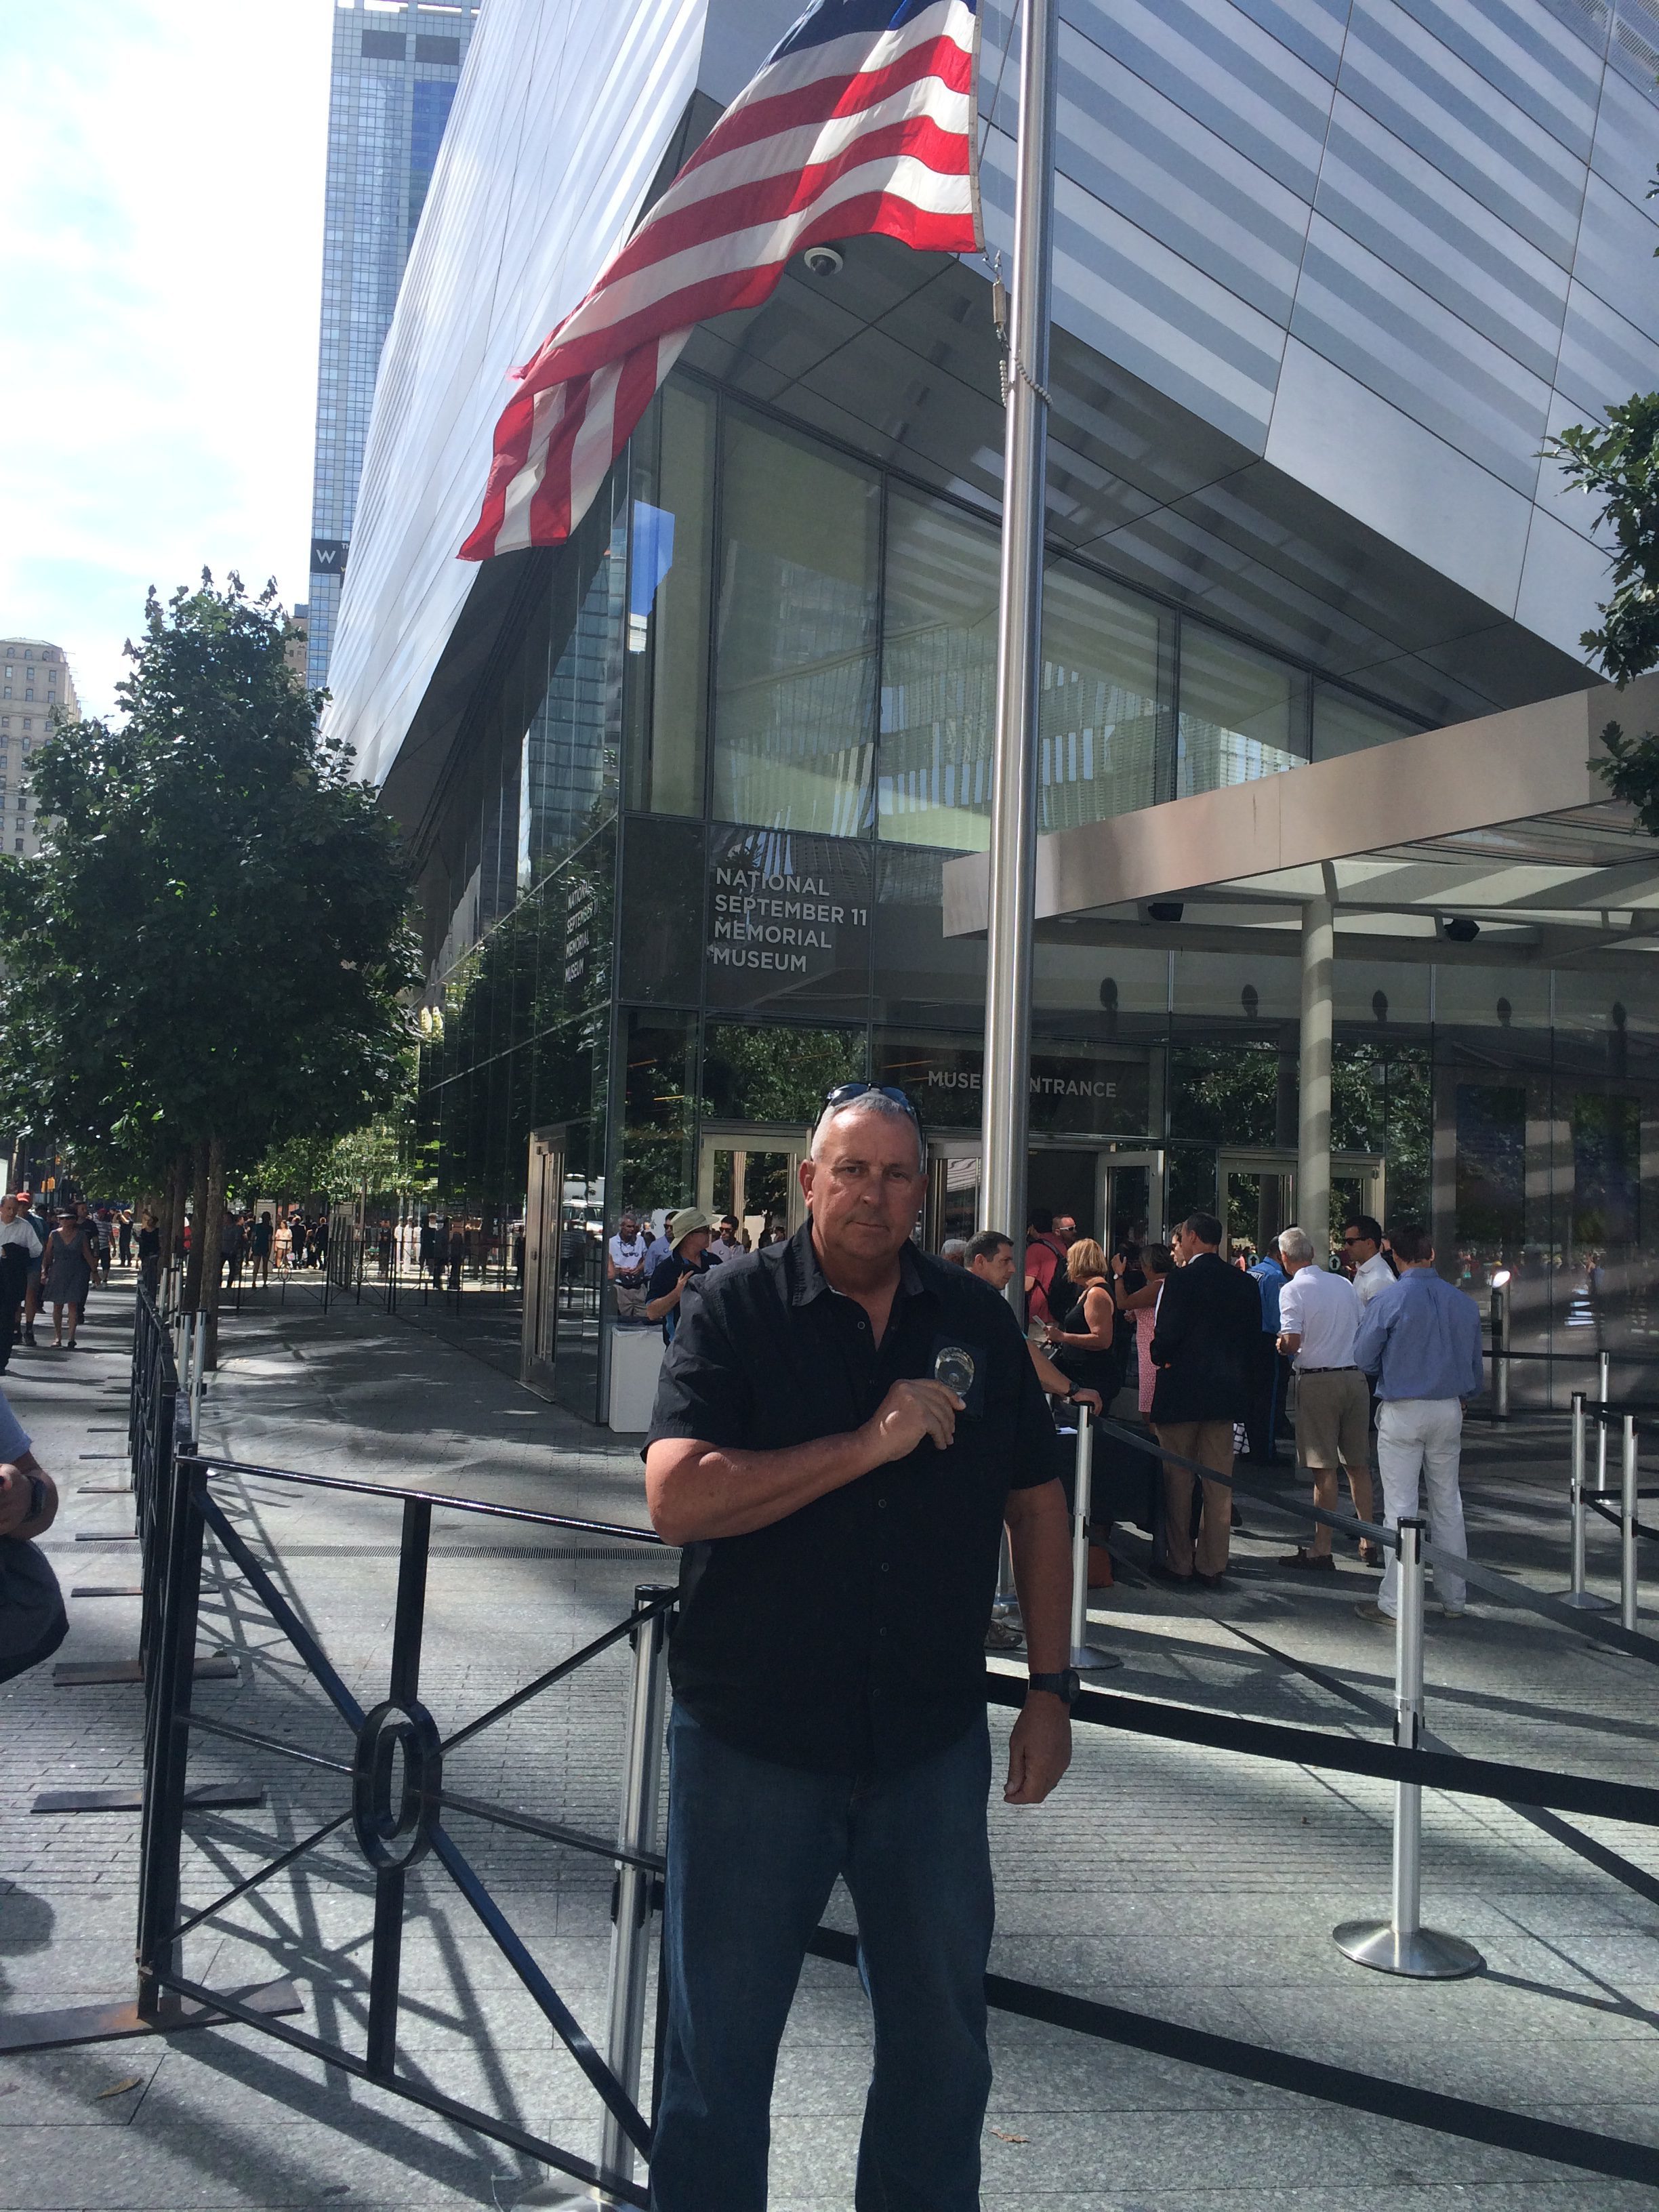 Dan Gray at the 9/11 Memorial in NYC on 9/11/16